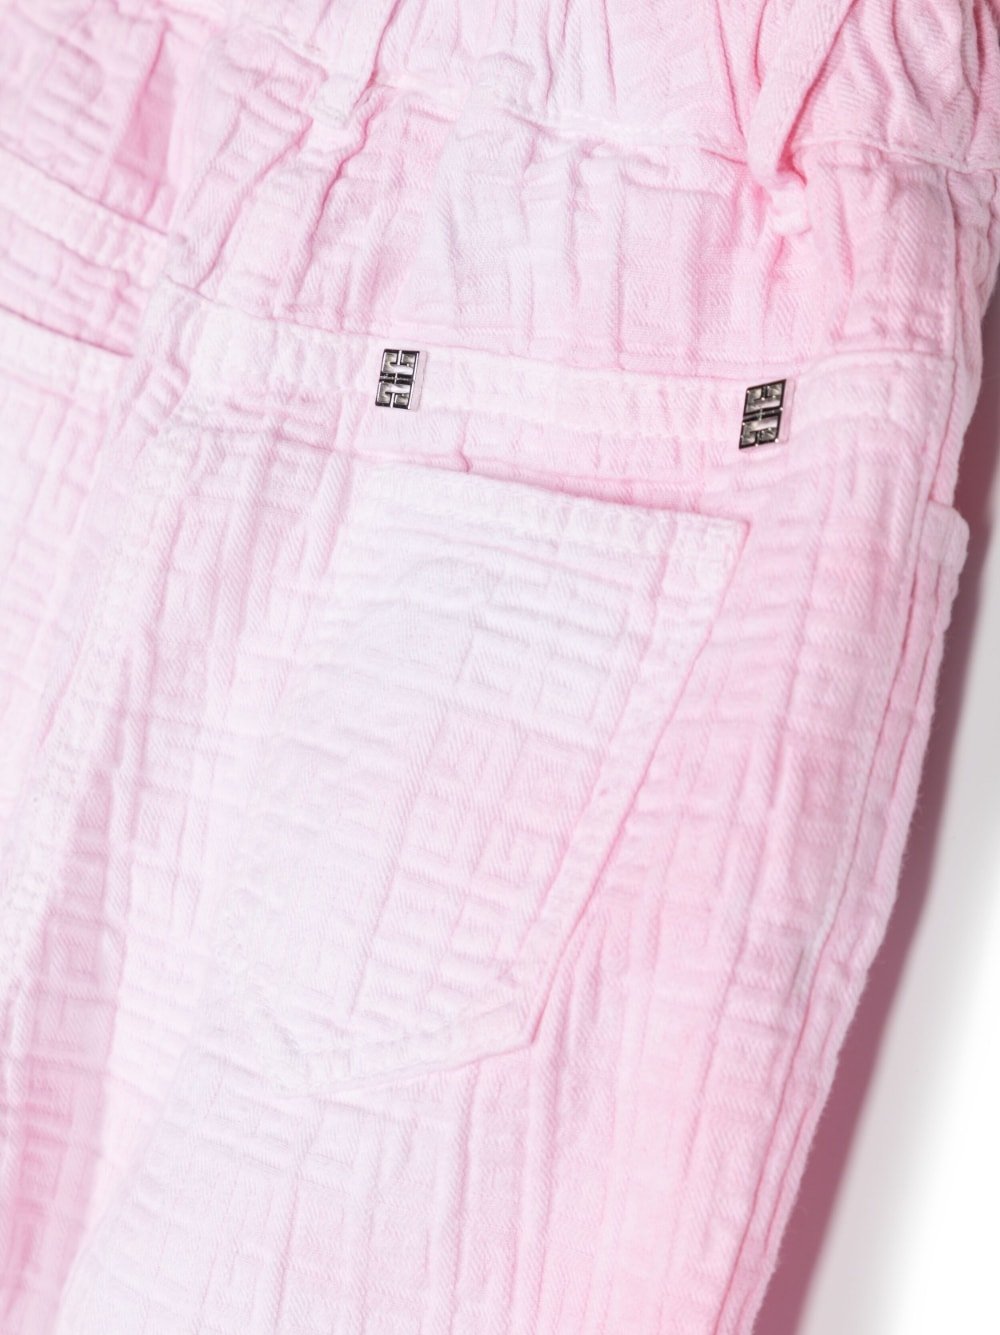 Pantalone effetto lavato con 4G in rilievo - Rubino Kids